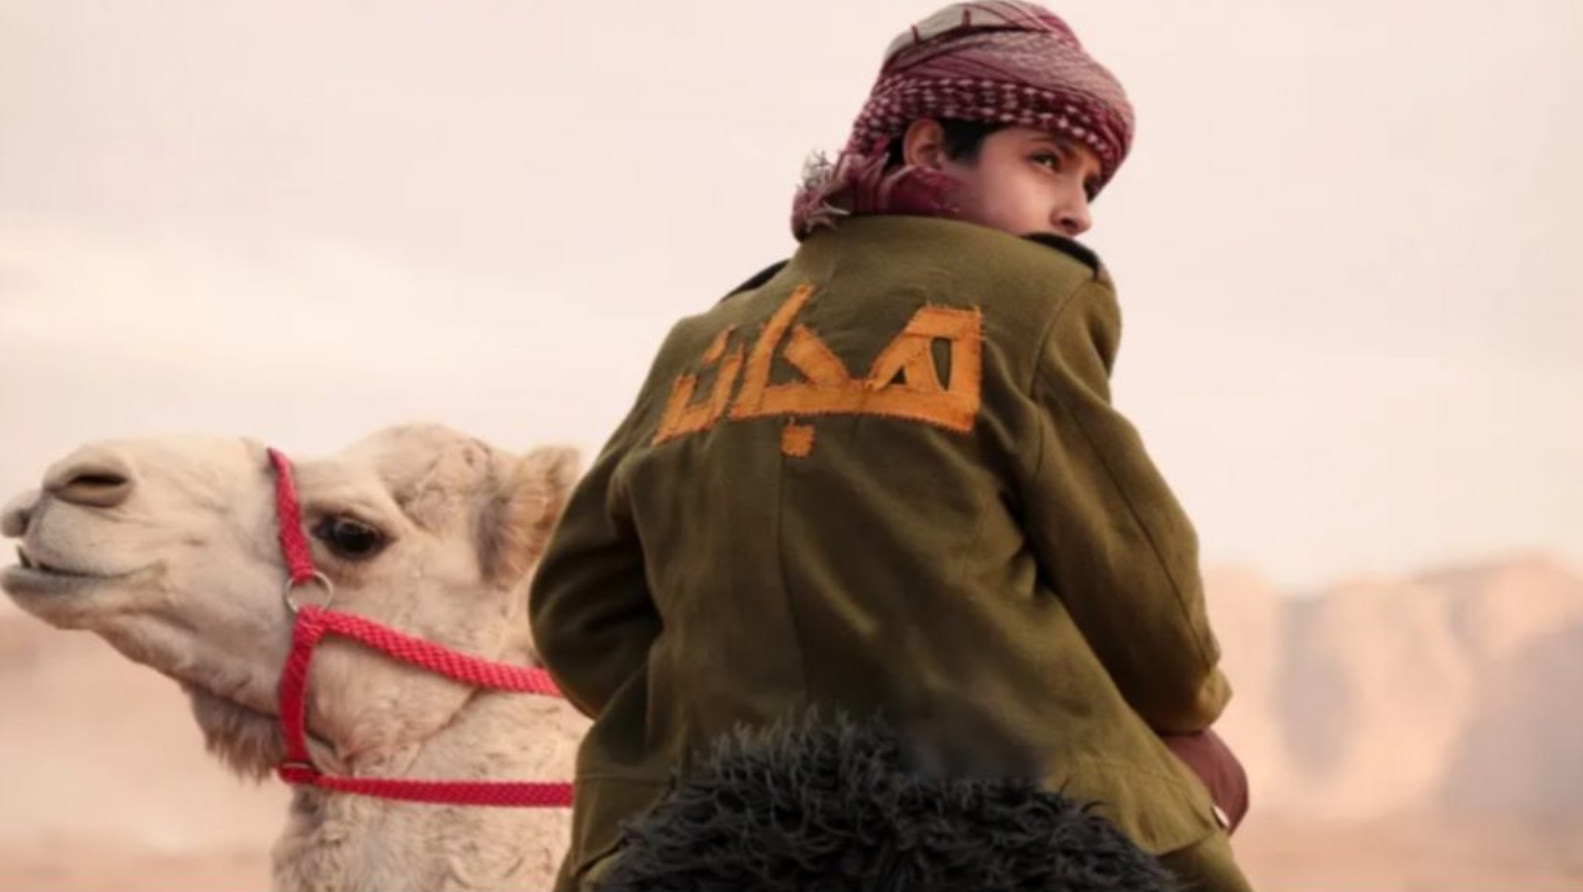 مهرجان مالمو للسينما العربية 14: تنافس بين 12 فيلمًا طويلًا و14 قصيرًا